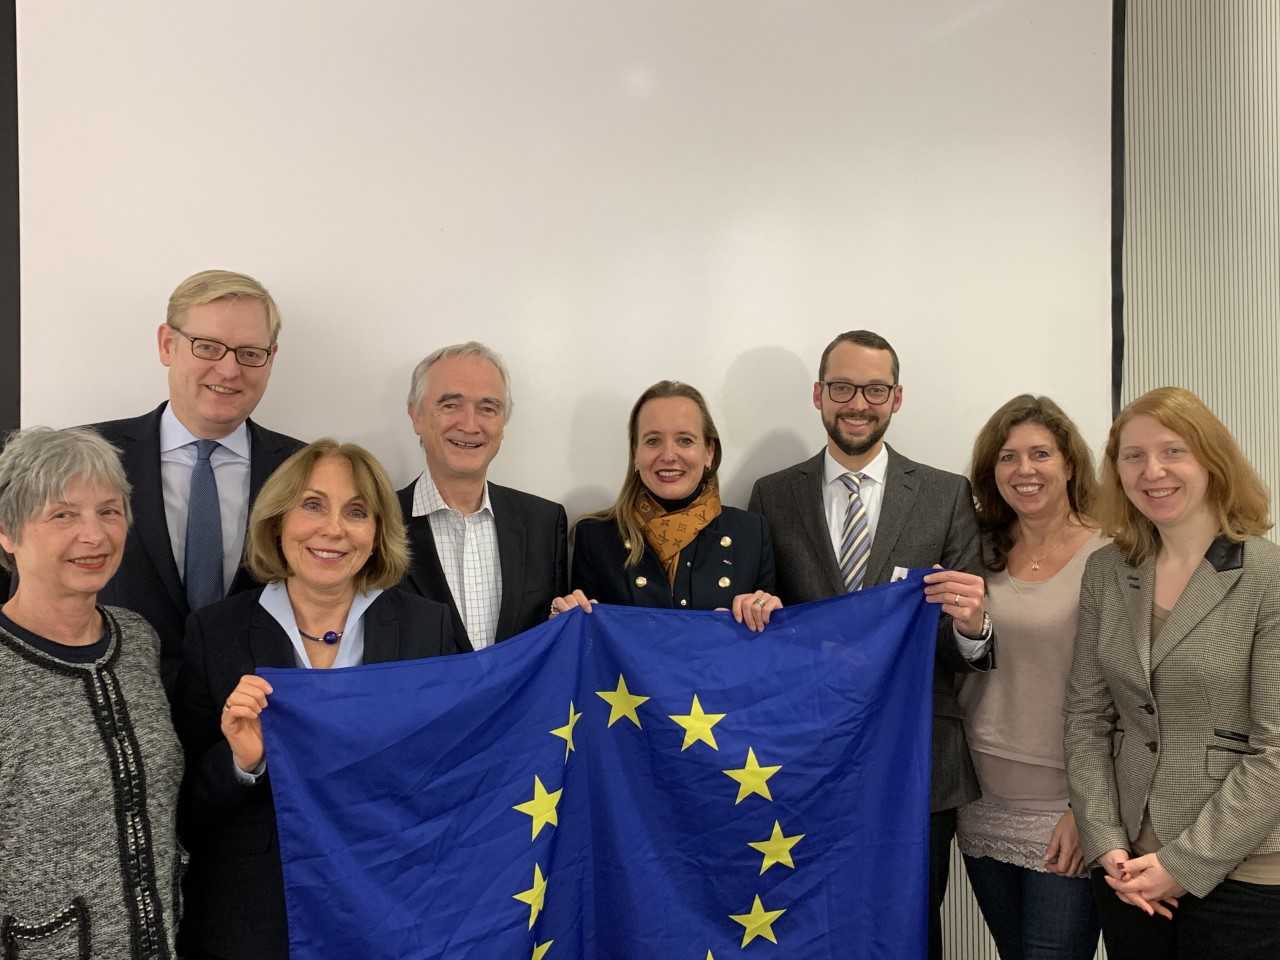 12.12.2018: Der Kreisvorstand hat gerade einstimmig Verena David (Bildmitte) zur Frankfurter Kandidatin für die Europawahl 2019 gewählt